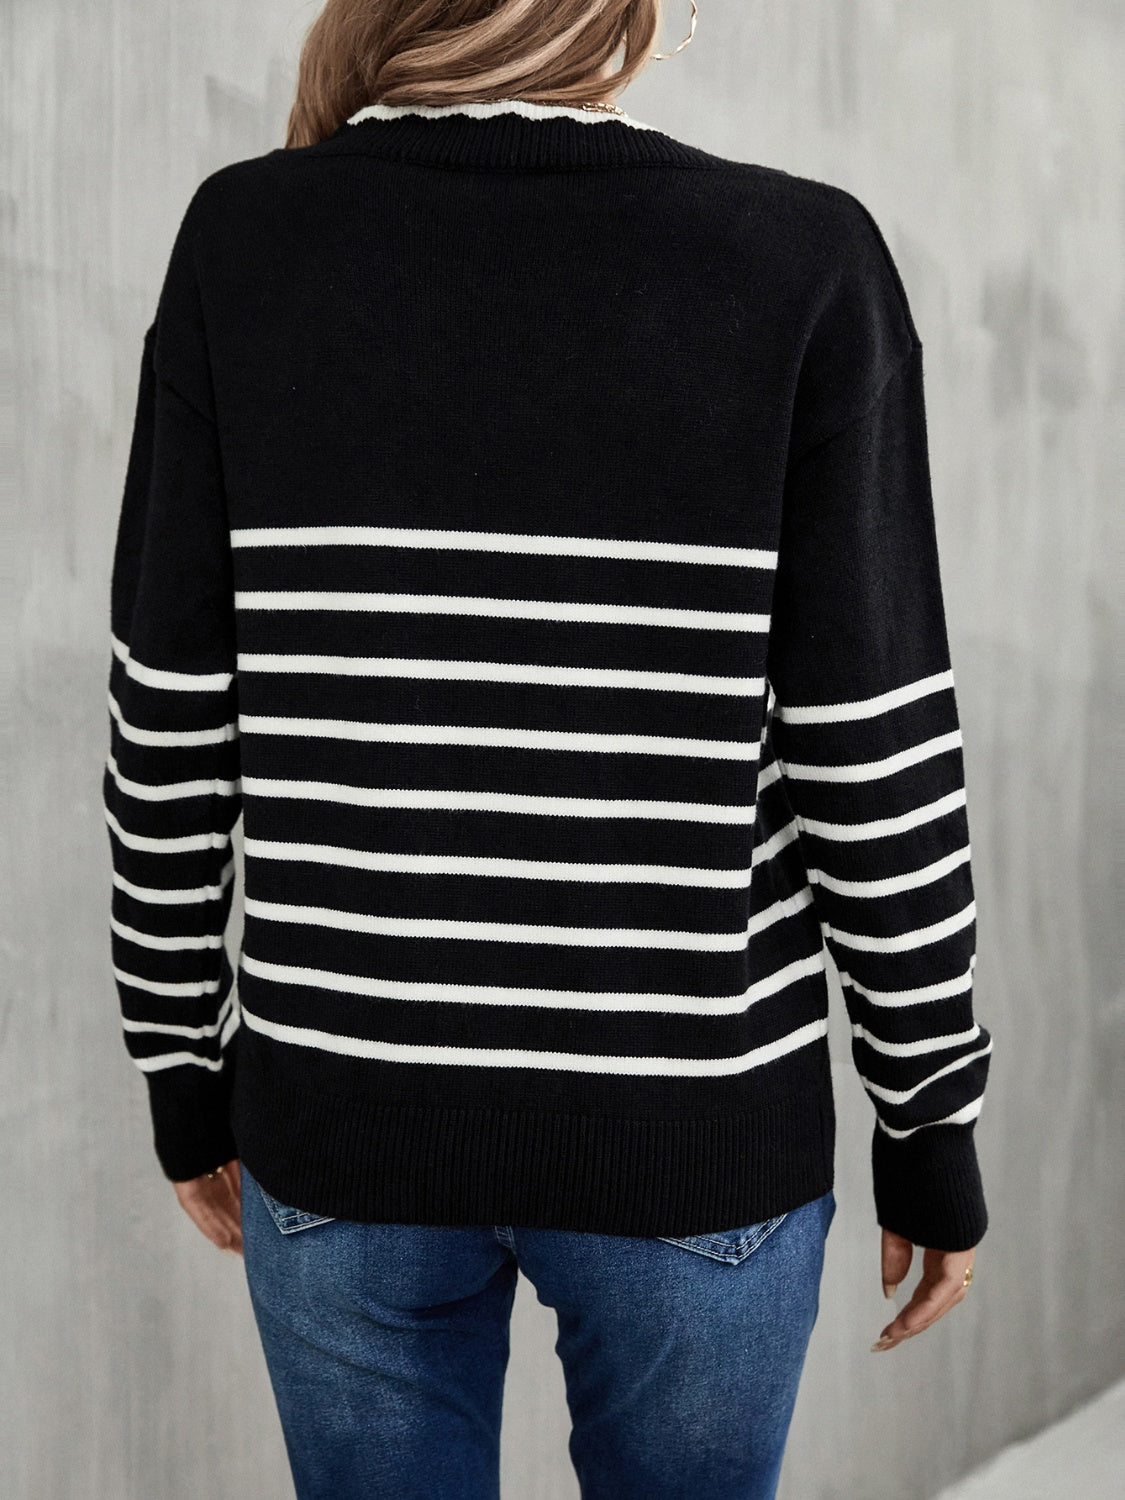 Striped V-Neck Drop Shoulder Sweater - Guy Christopher 